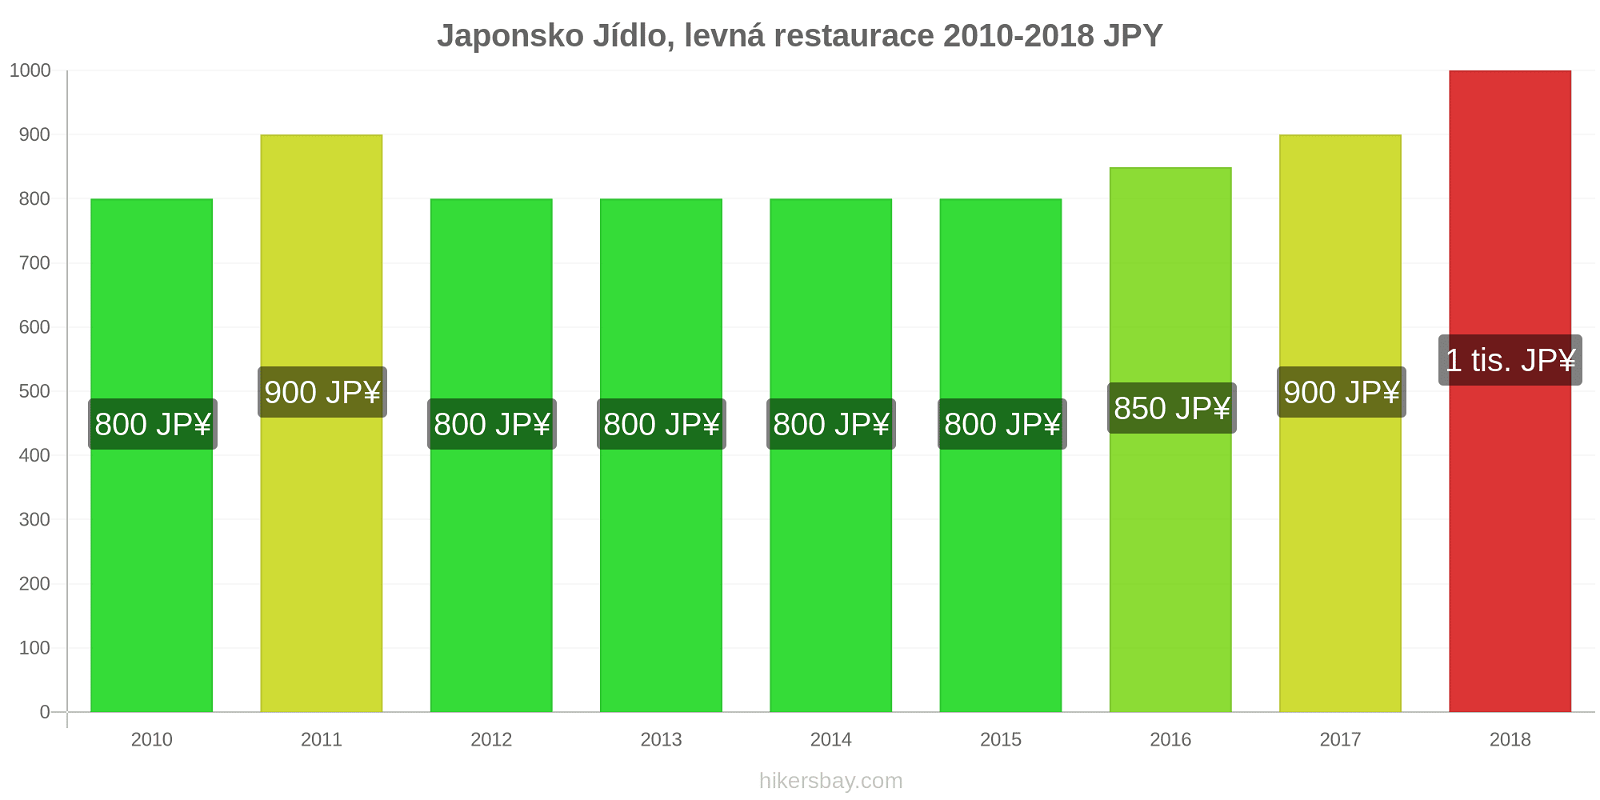 Japonsko změny cen Jídlo v levné restauraci hikersbay.com